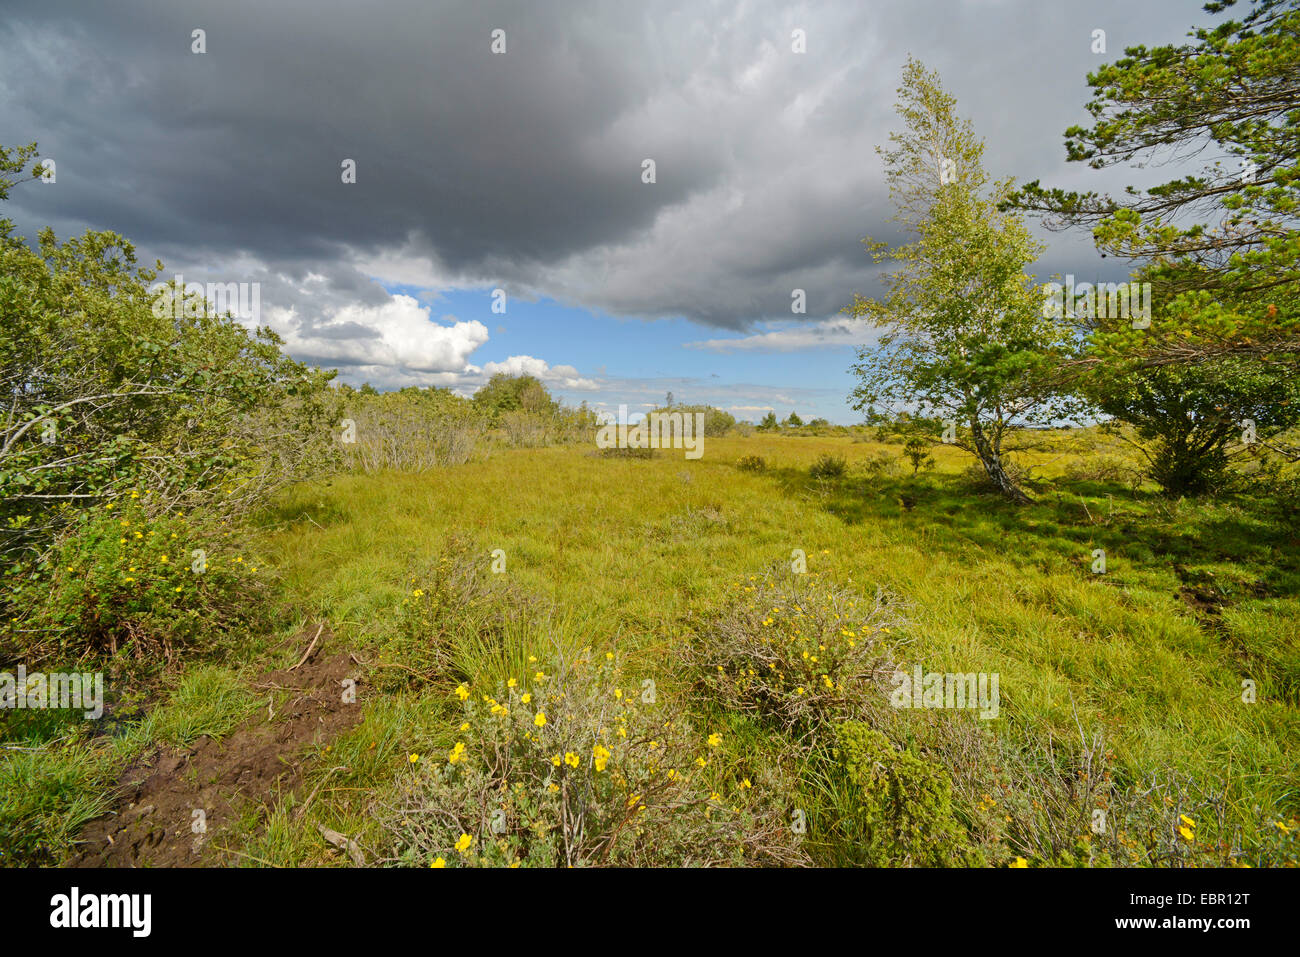 nähert sich Gewitter über das Naturschutzgebiet Moeckelmossen auf Oeland, Schweden, Oeland, Stora Alvaret Stockfoto